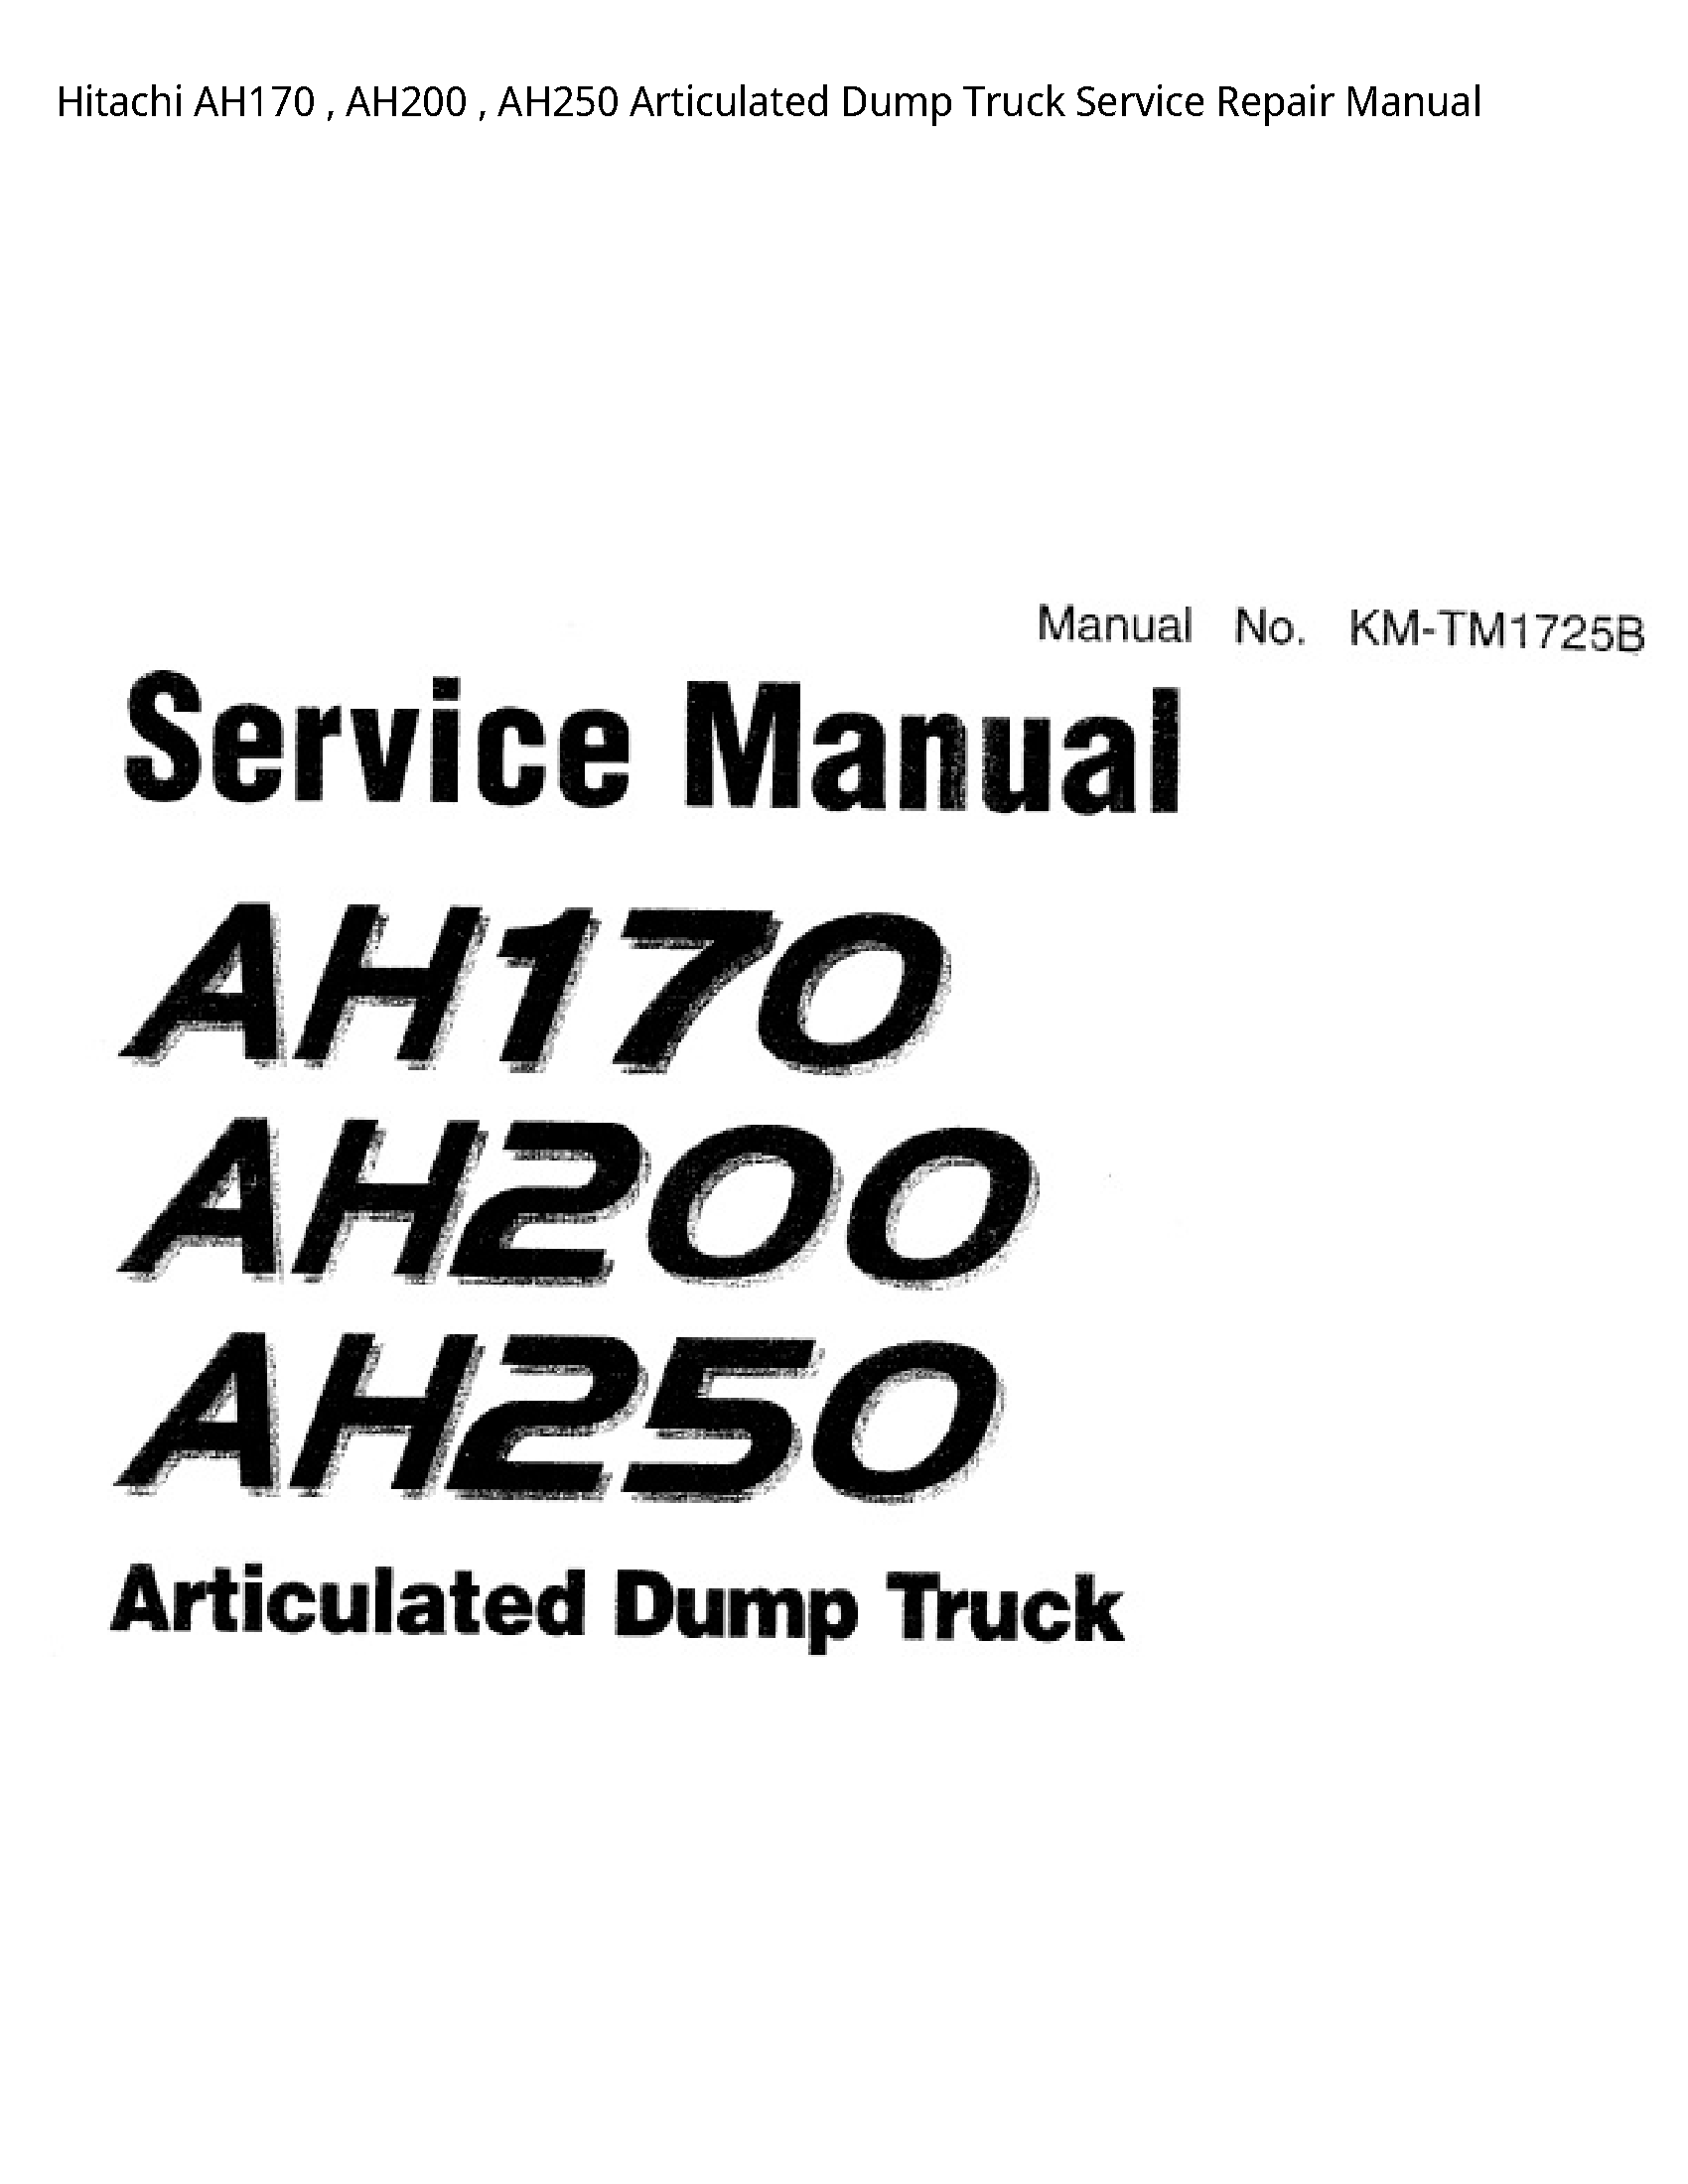 Hitachi AH170 Articulated Dump Truck manual